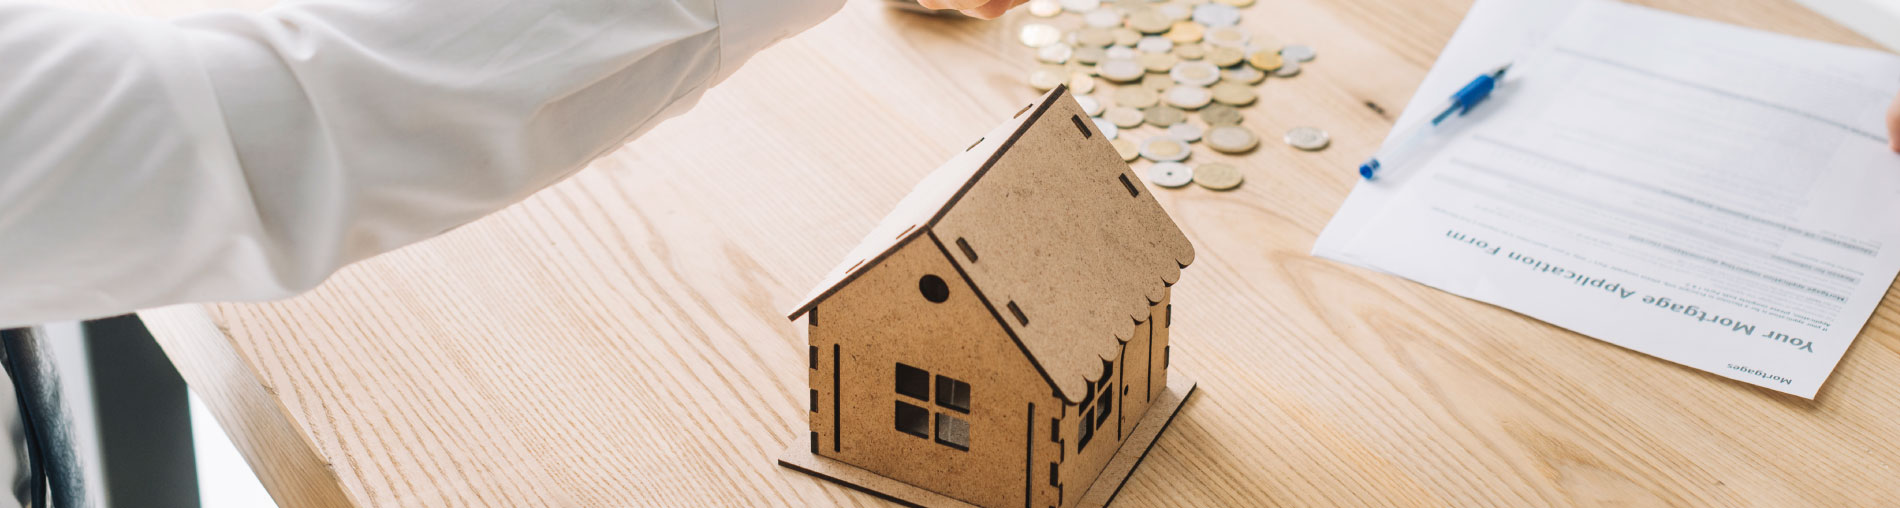 Cinco pasos para comprar una casa